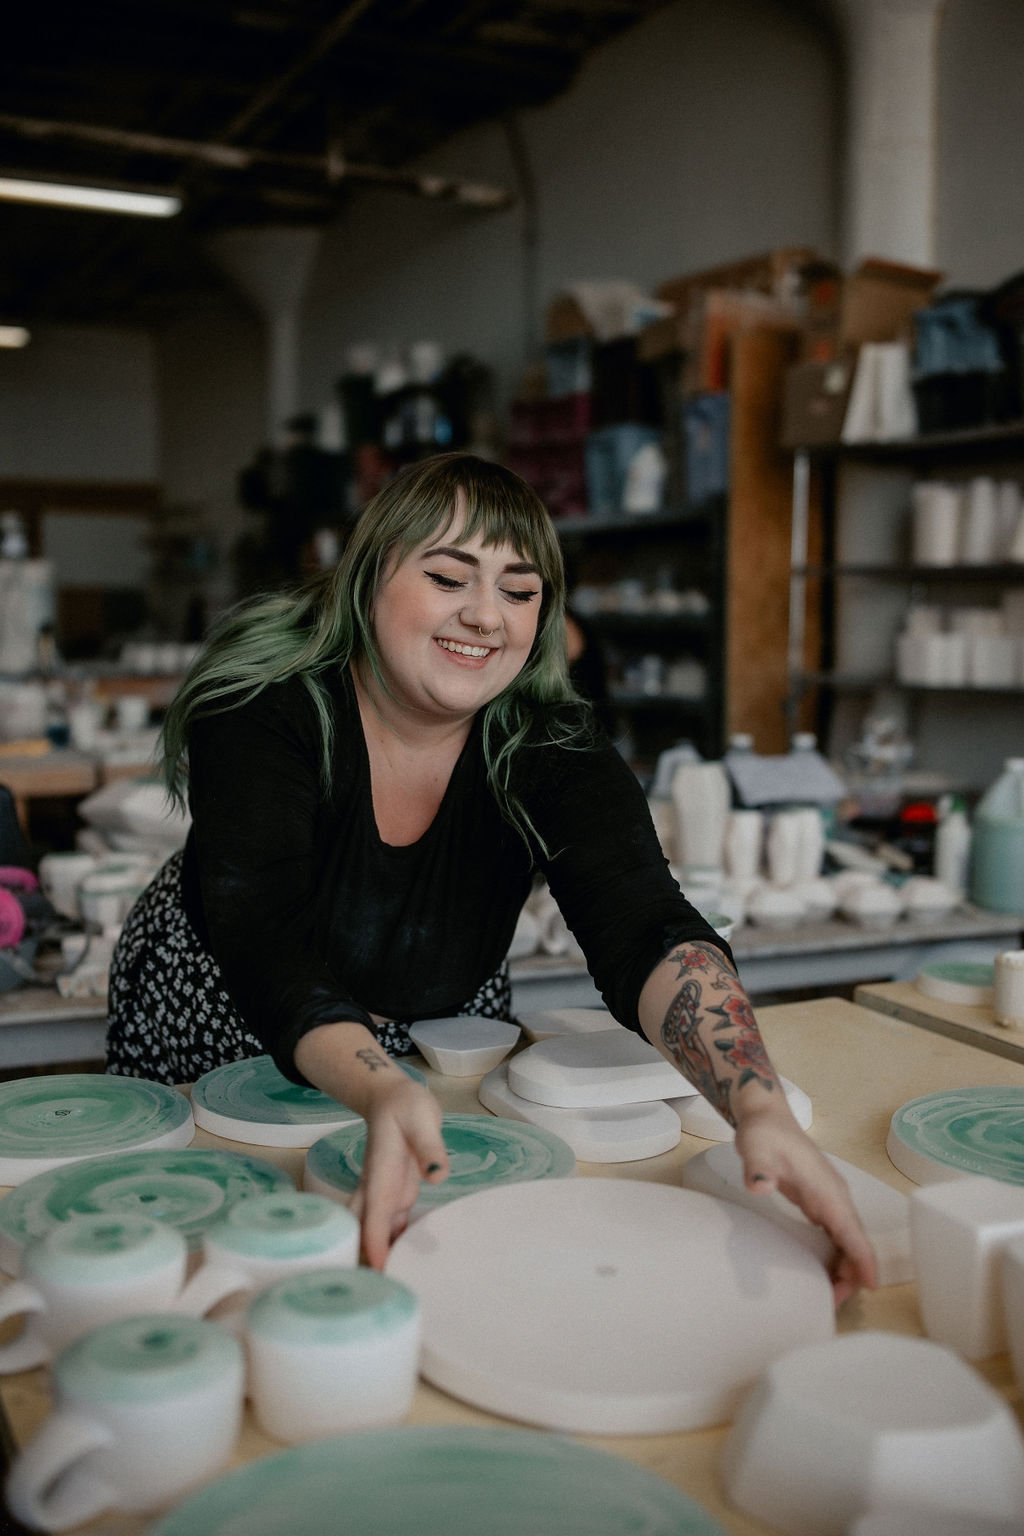  Lauren HB Studio production artist hand crafting pottery onsite at Lauren HB Studio. 